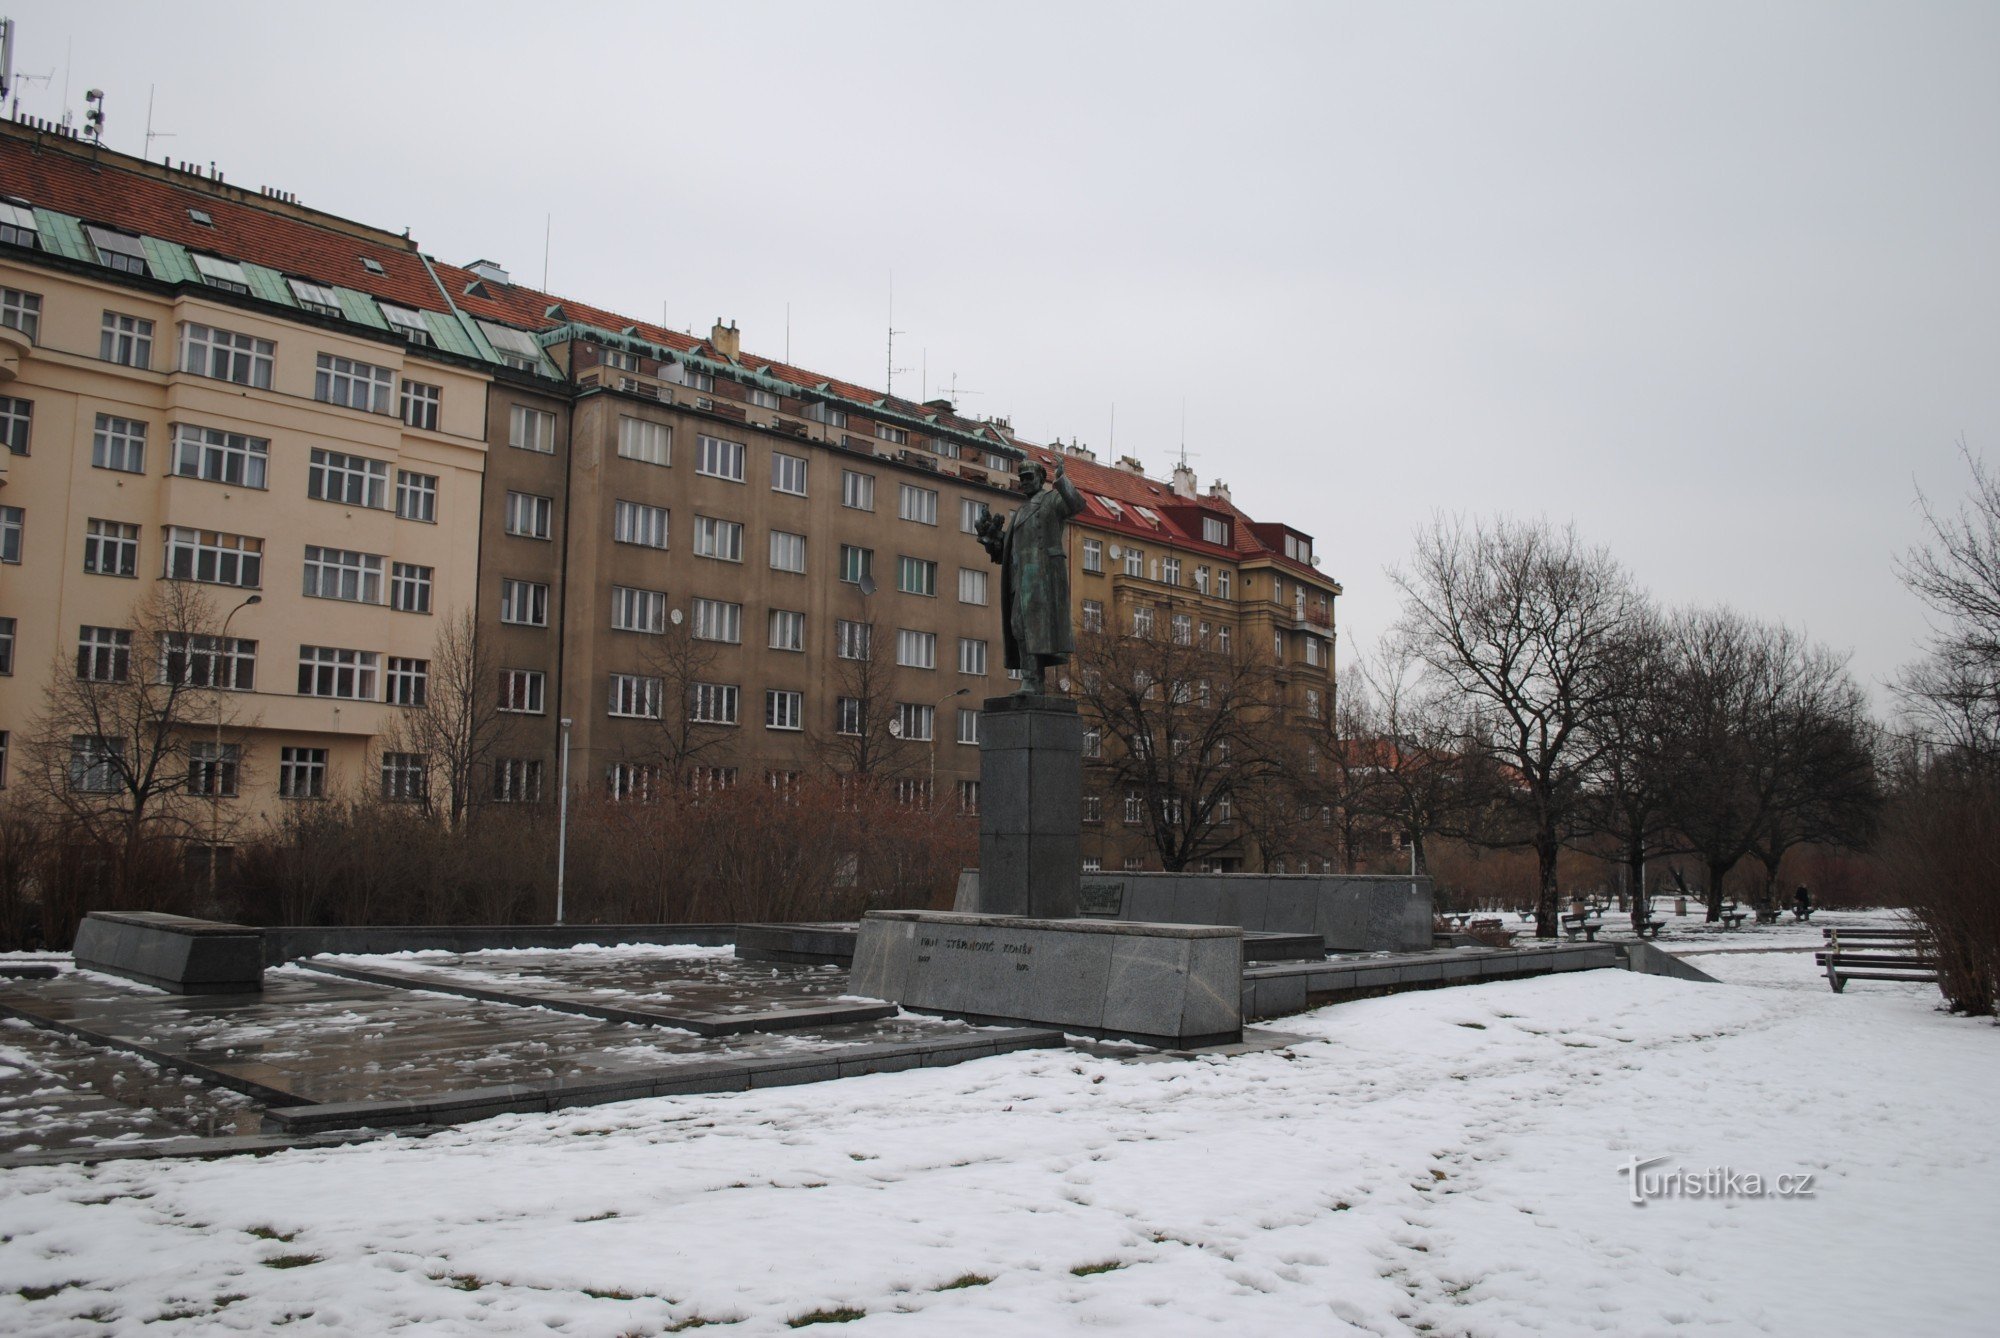 Monument - Ivan Stěpanovič Koněv